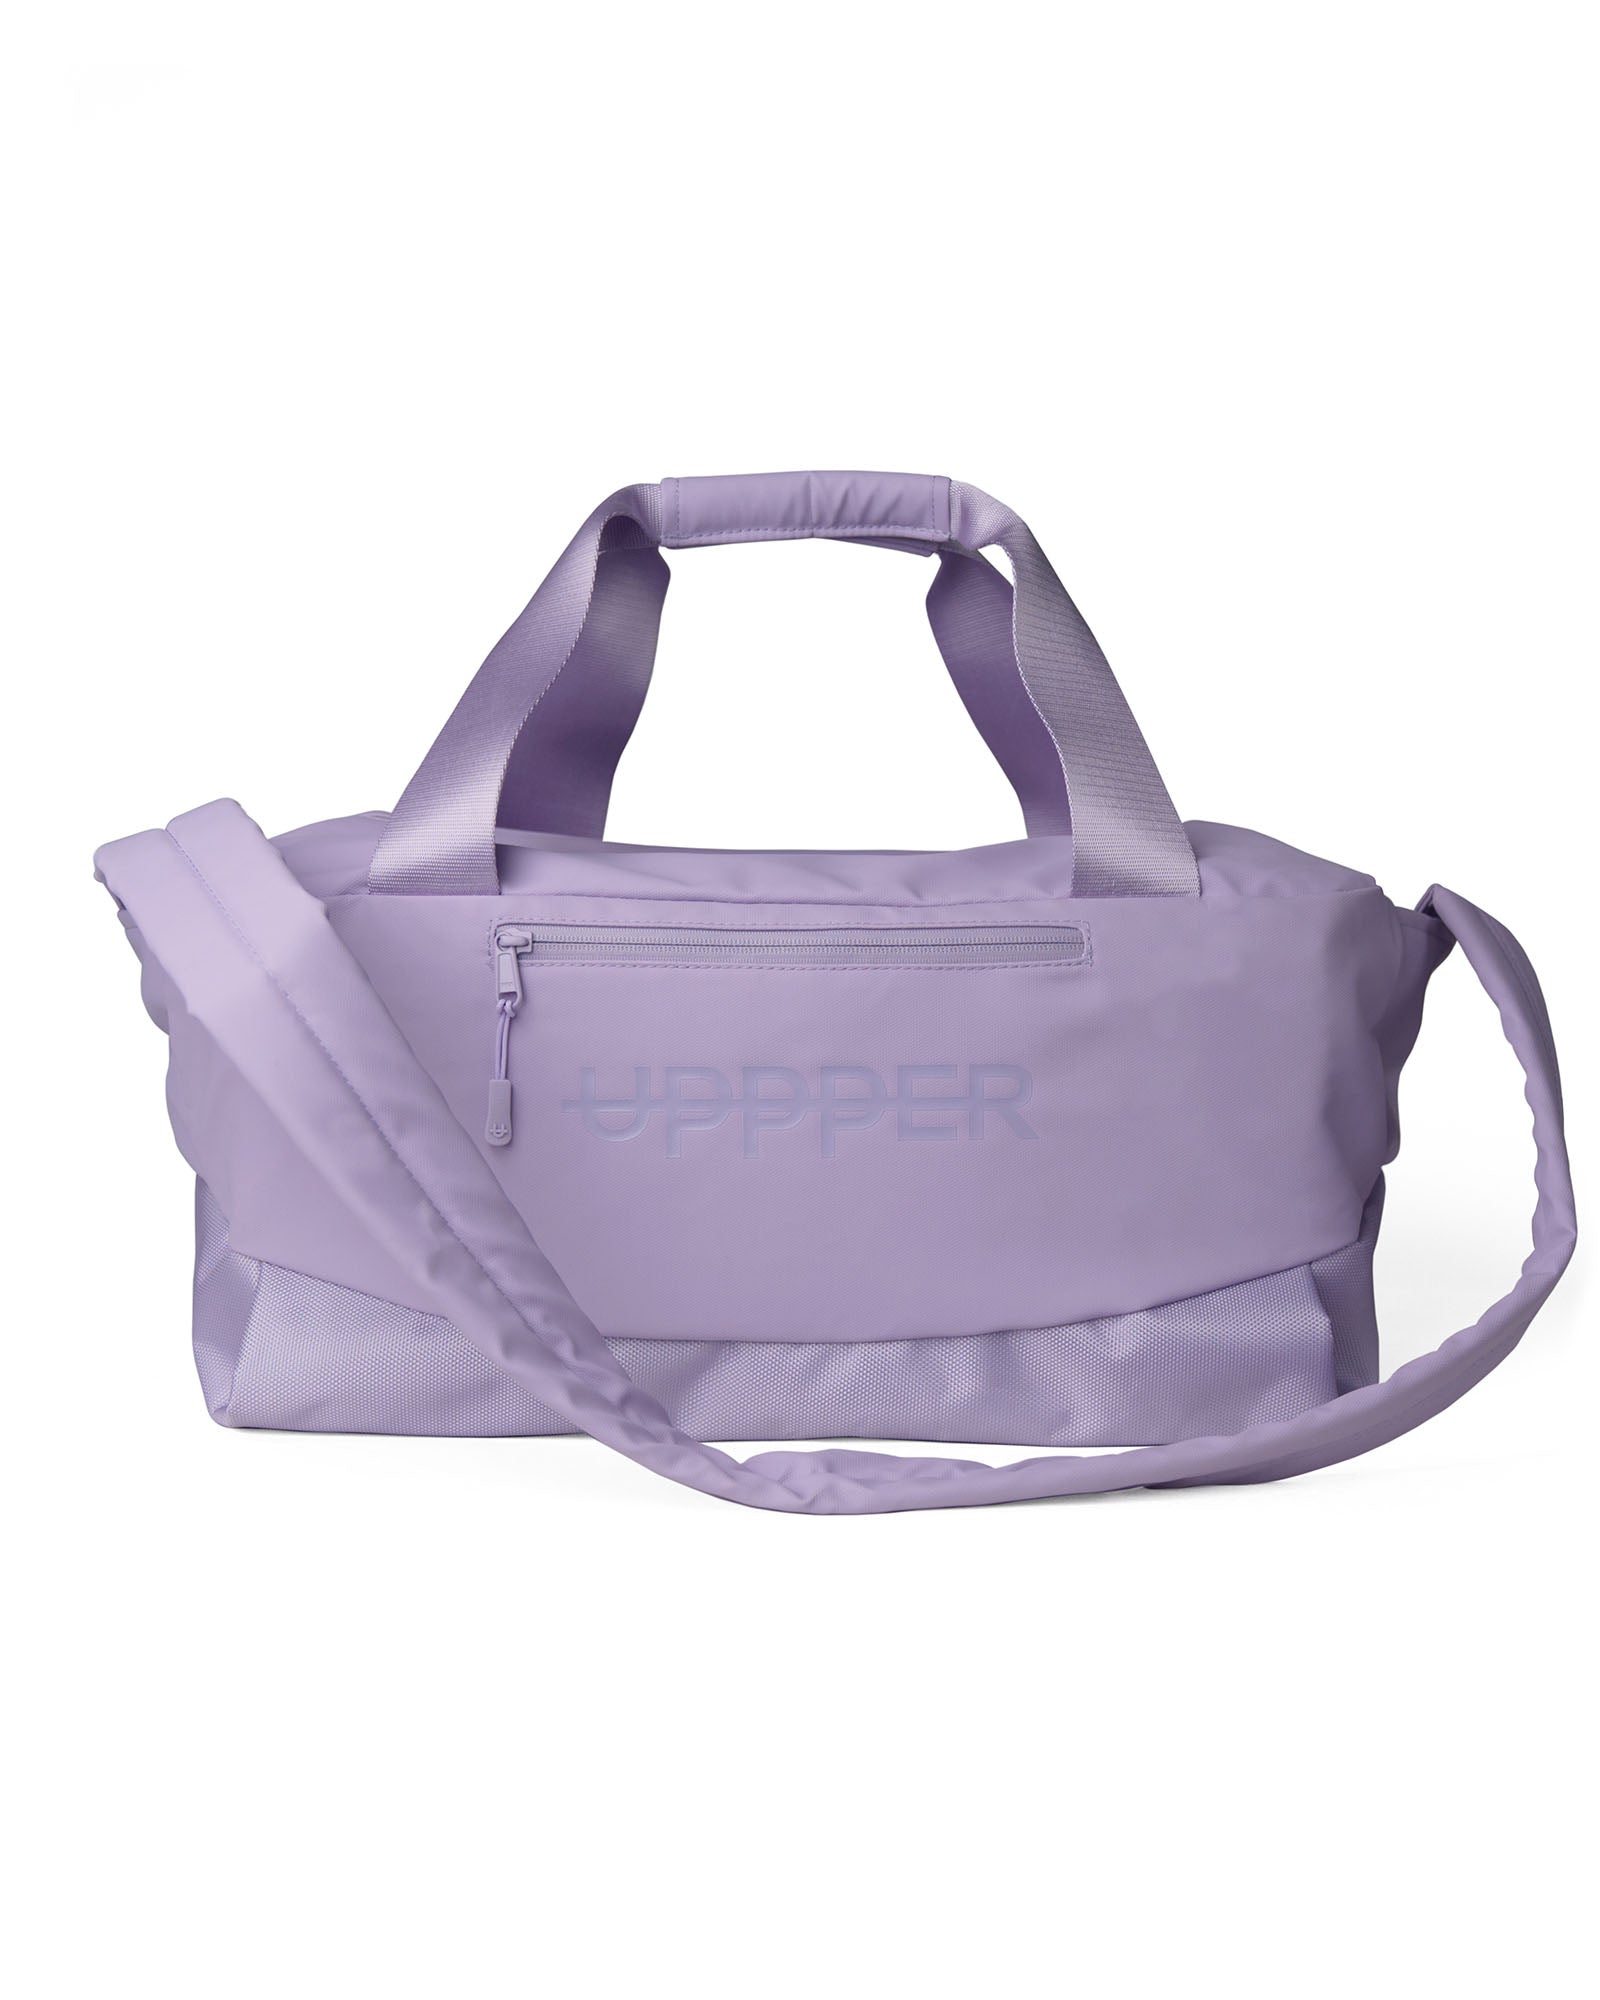 Gym Bag Lavender